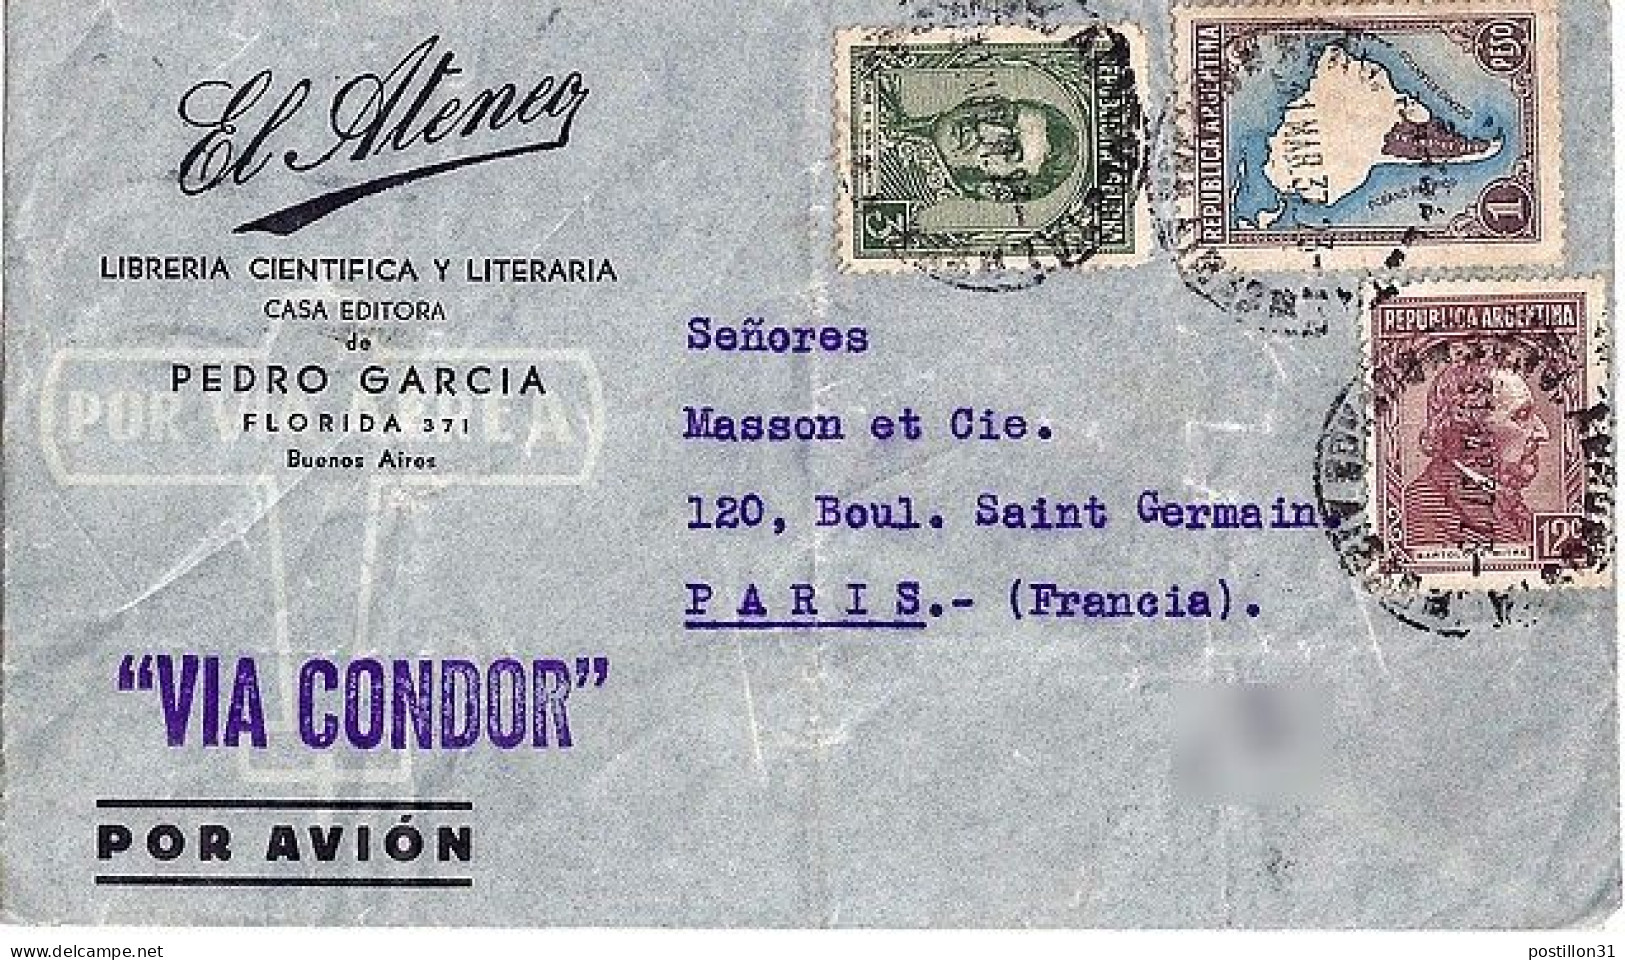 ARGENTINE N° 366/371/386 S/L. VIA CONDOR DE BUENOS AIRES/31.3.37 POUR LA FRANCE - Storia Postale